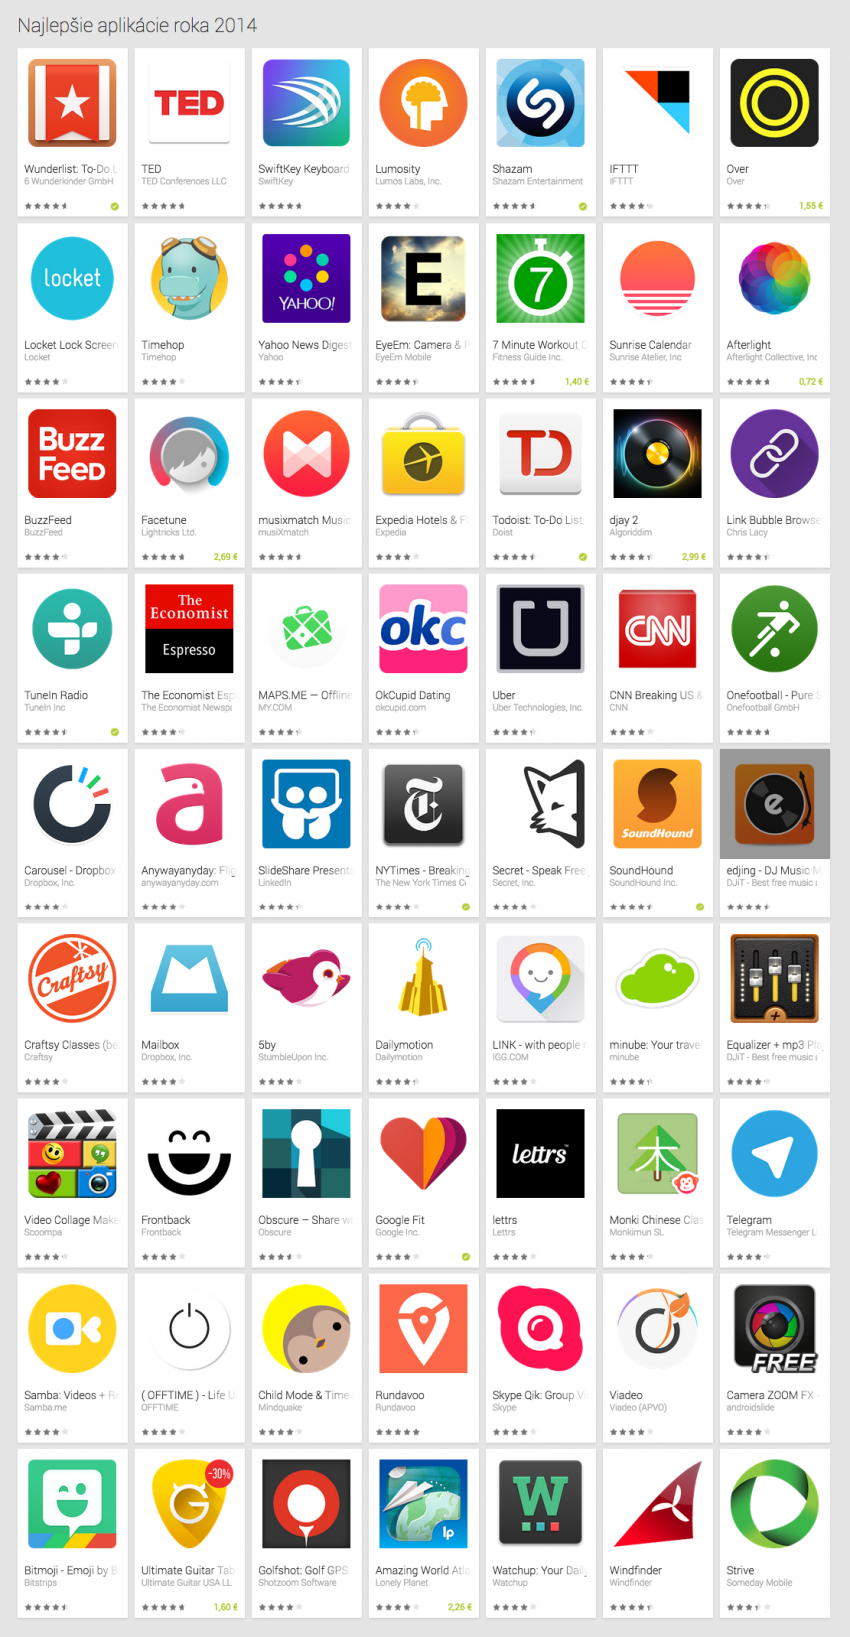 Slovenske nejlepsi aplikace roku 2014